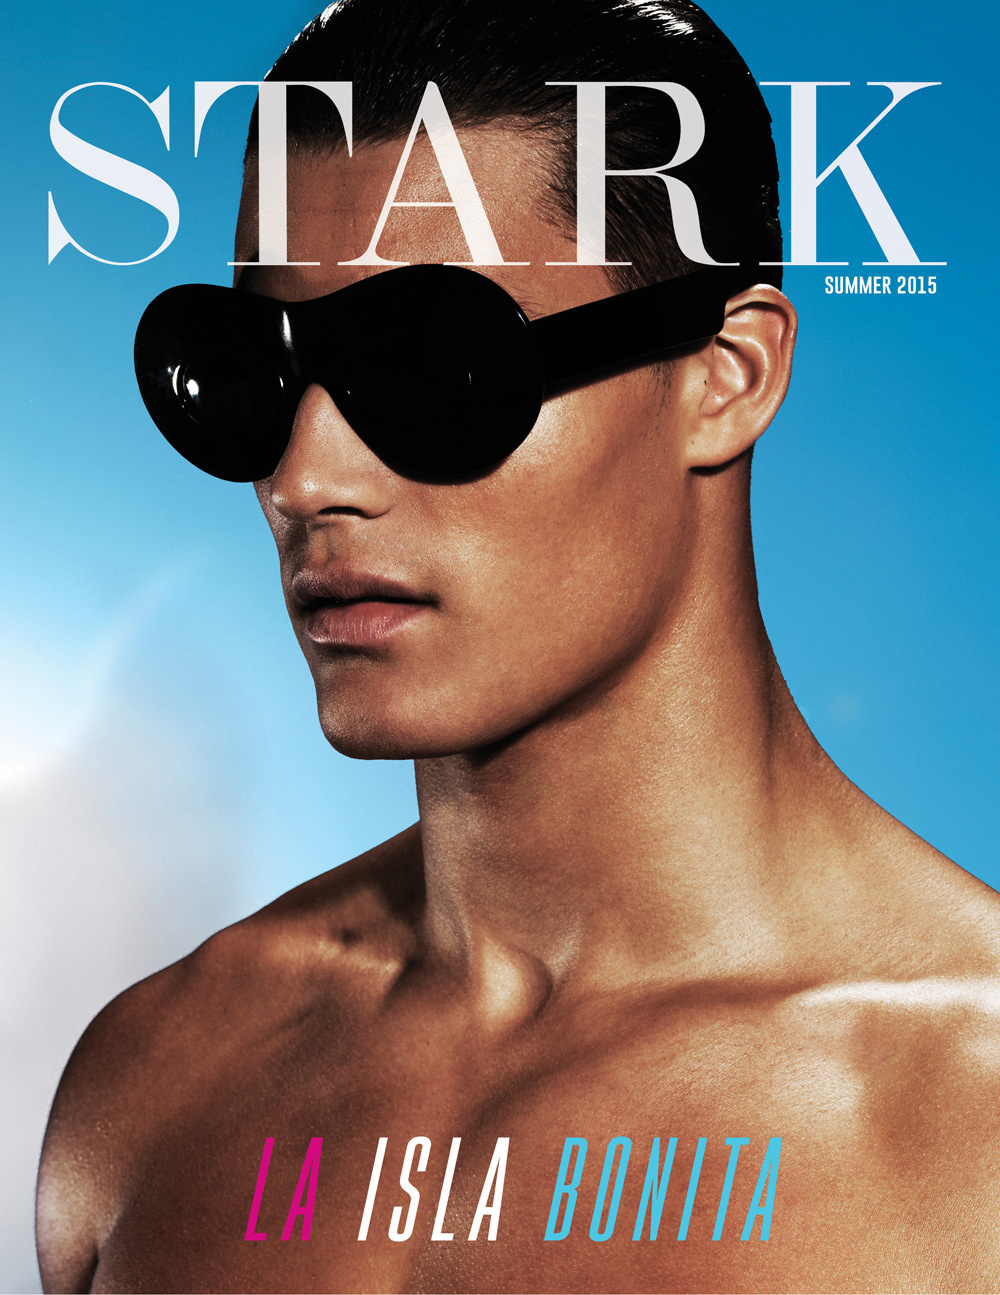 Tyler Maher Sports Swimwear for Stark Summer Cover Shoot